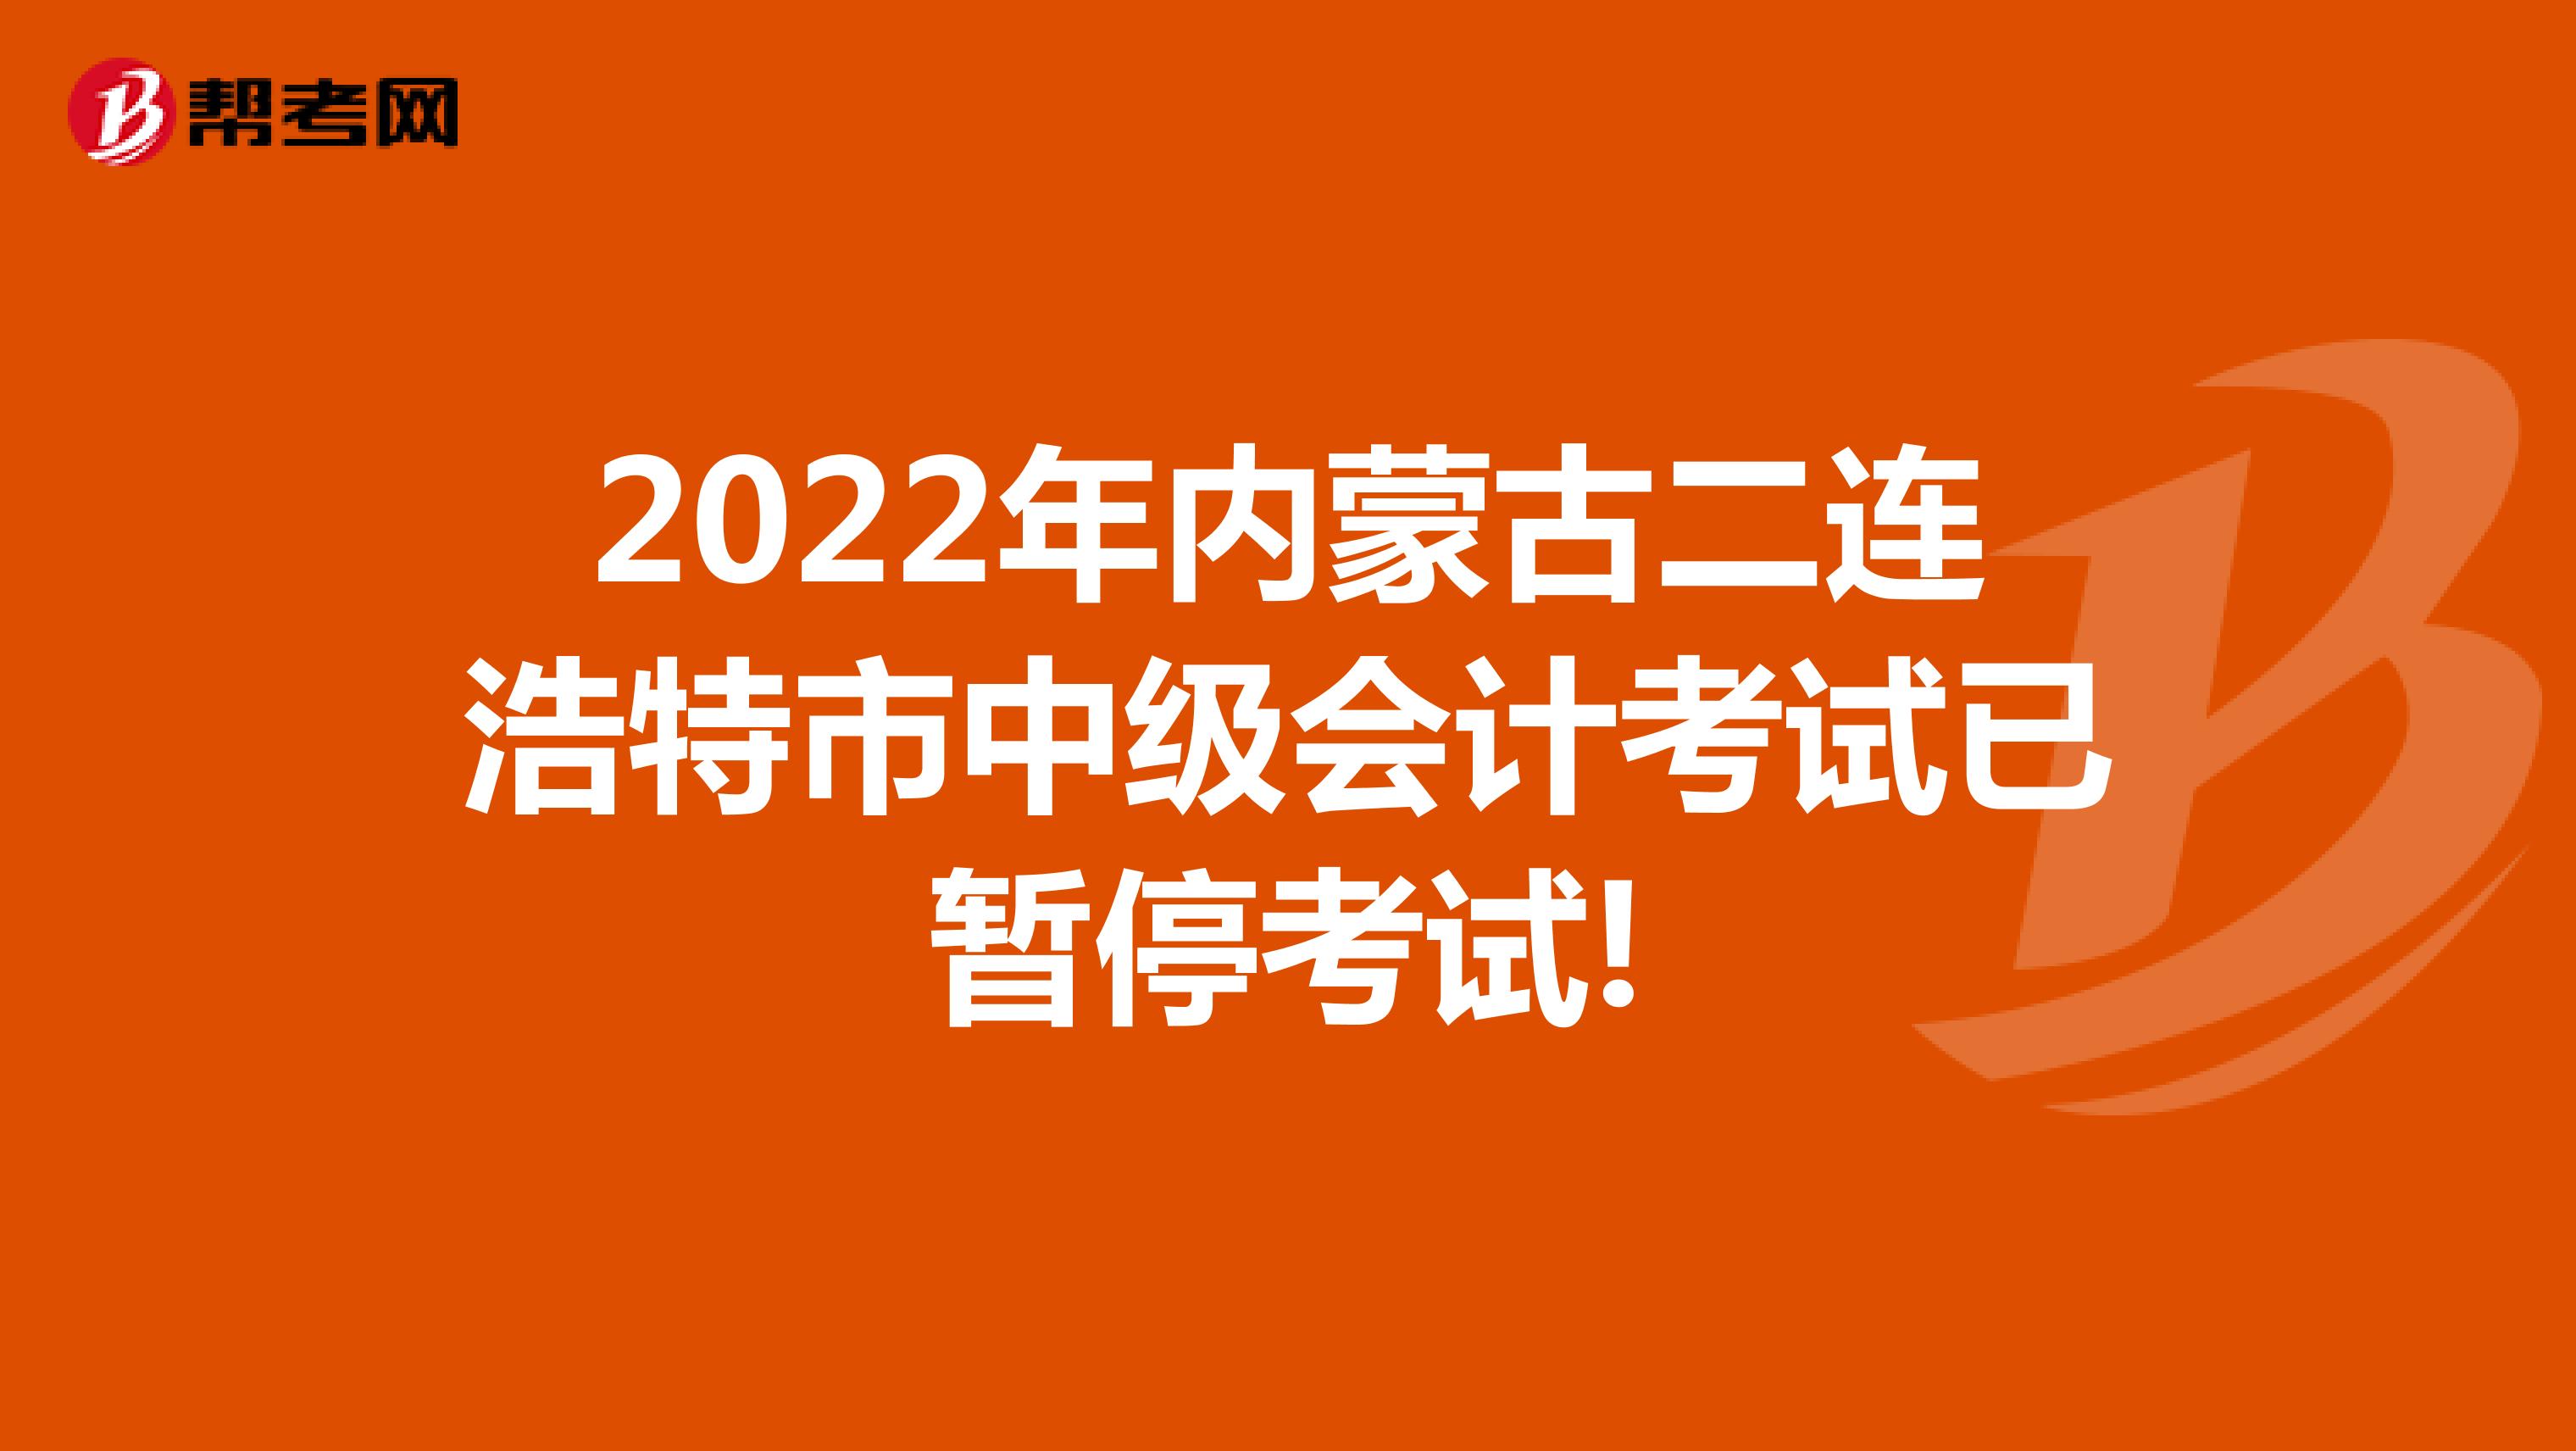 2022年内蒙古二连浩特市中级会计考试已暂停考试!